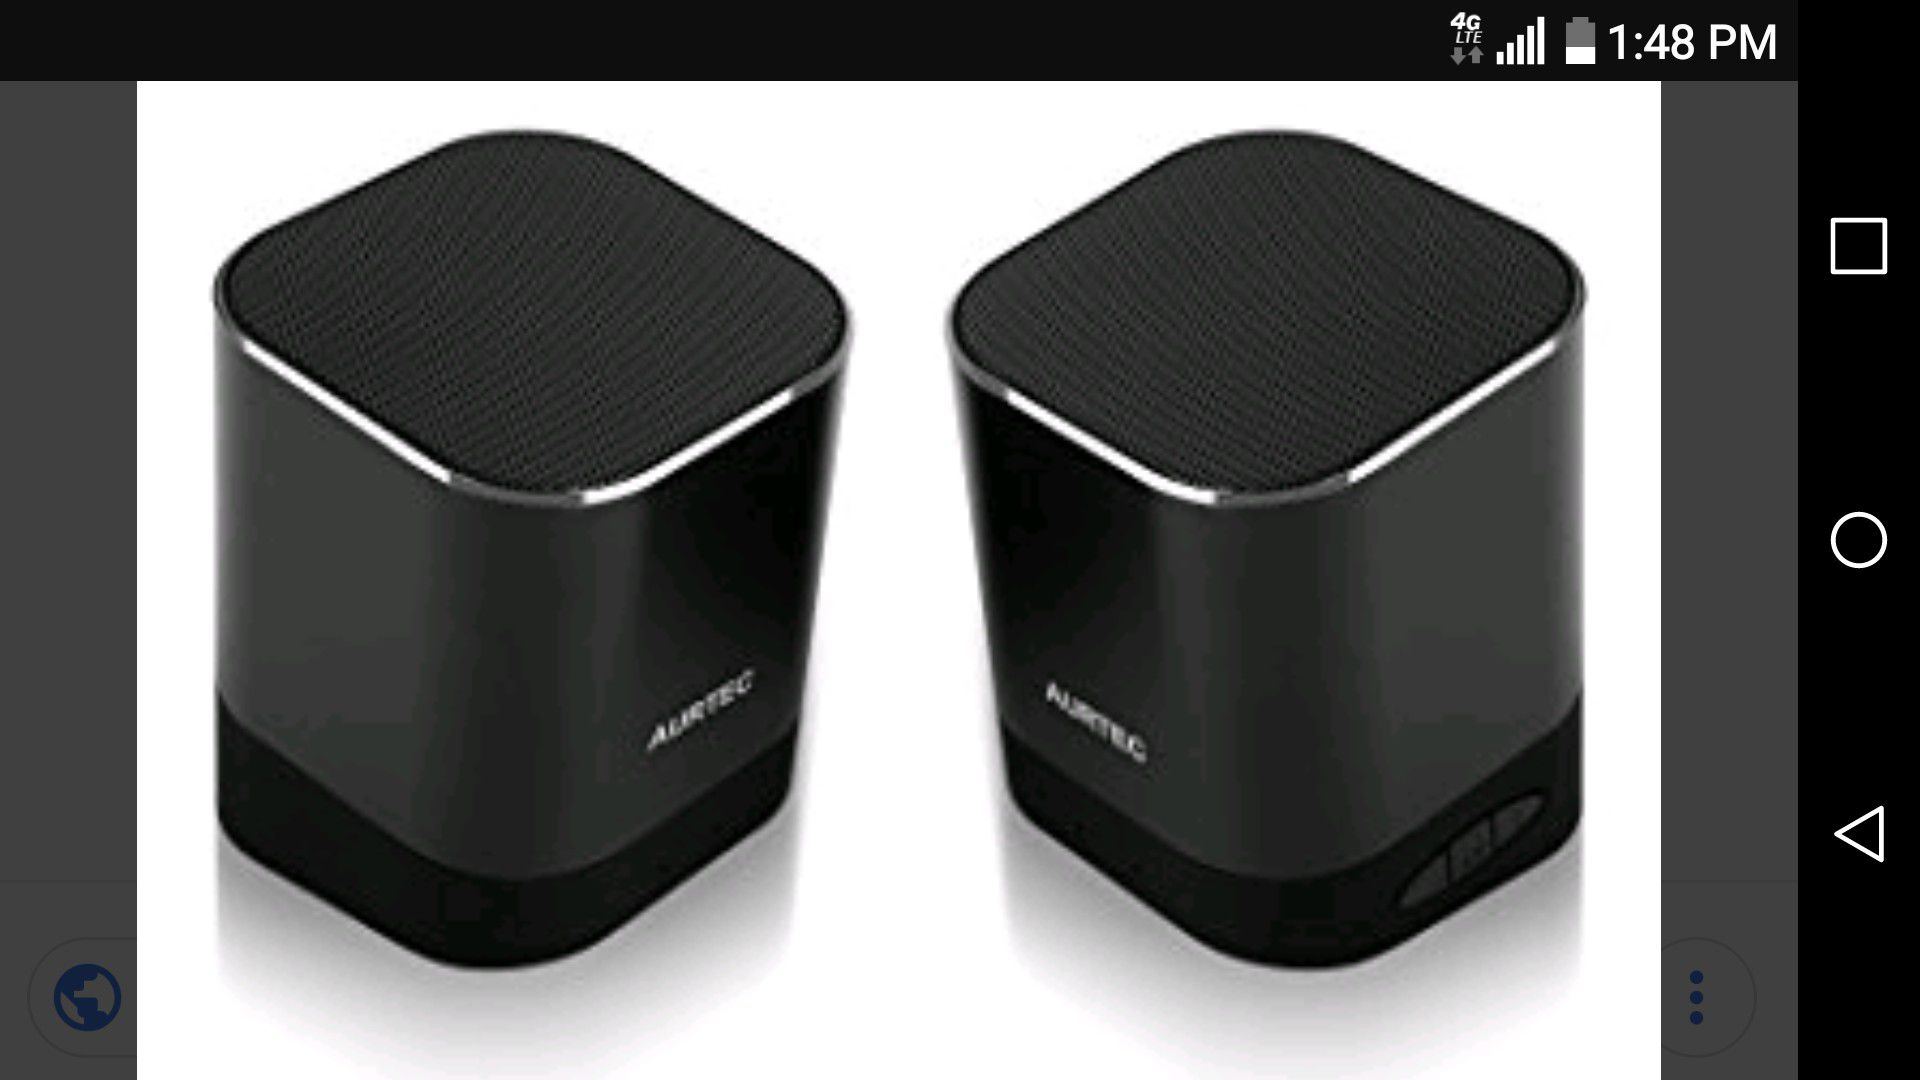 Aurtec Dual Bluetooth Speakers